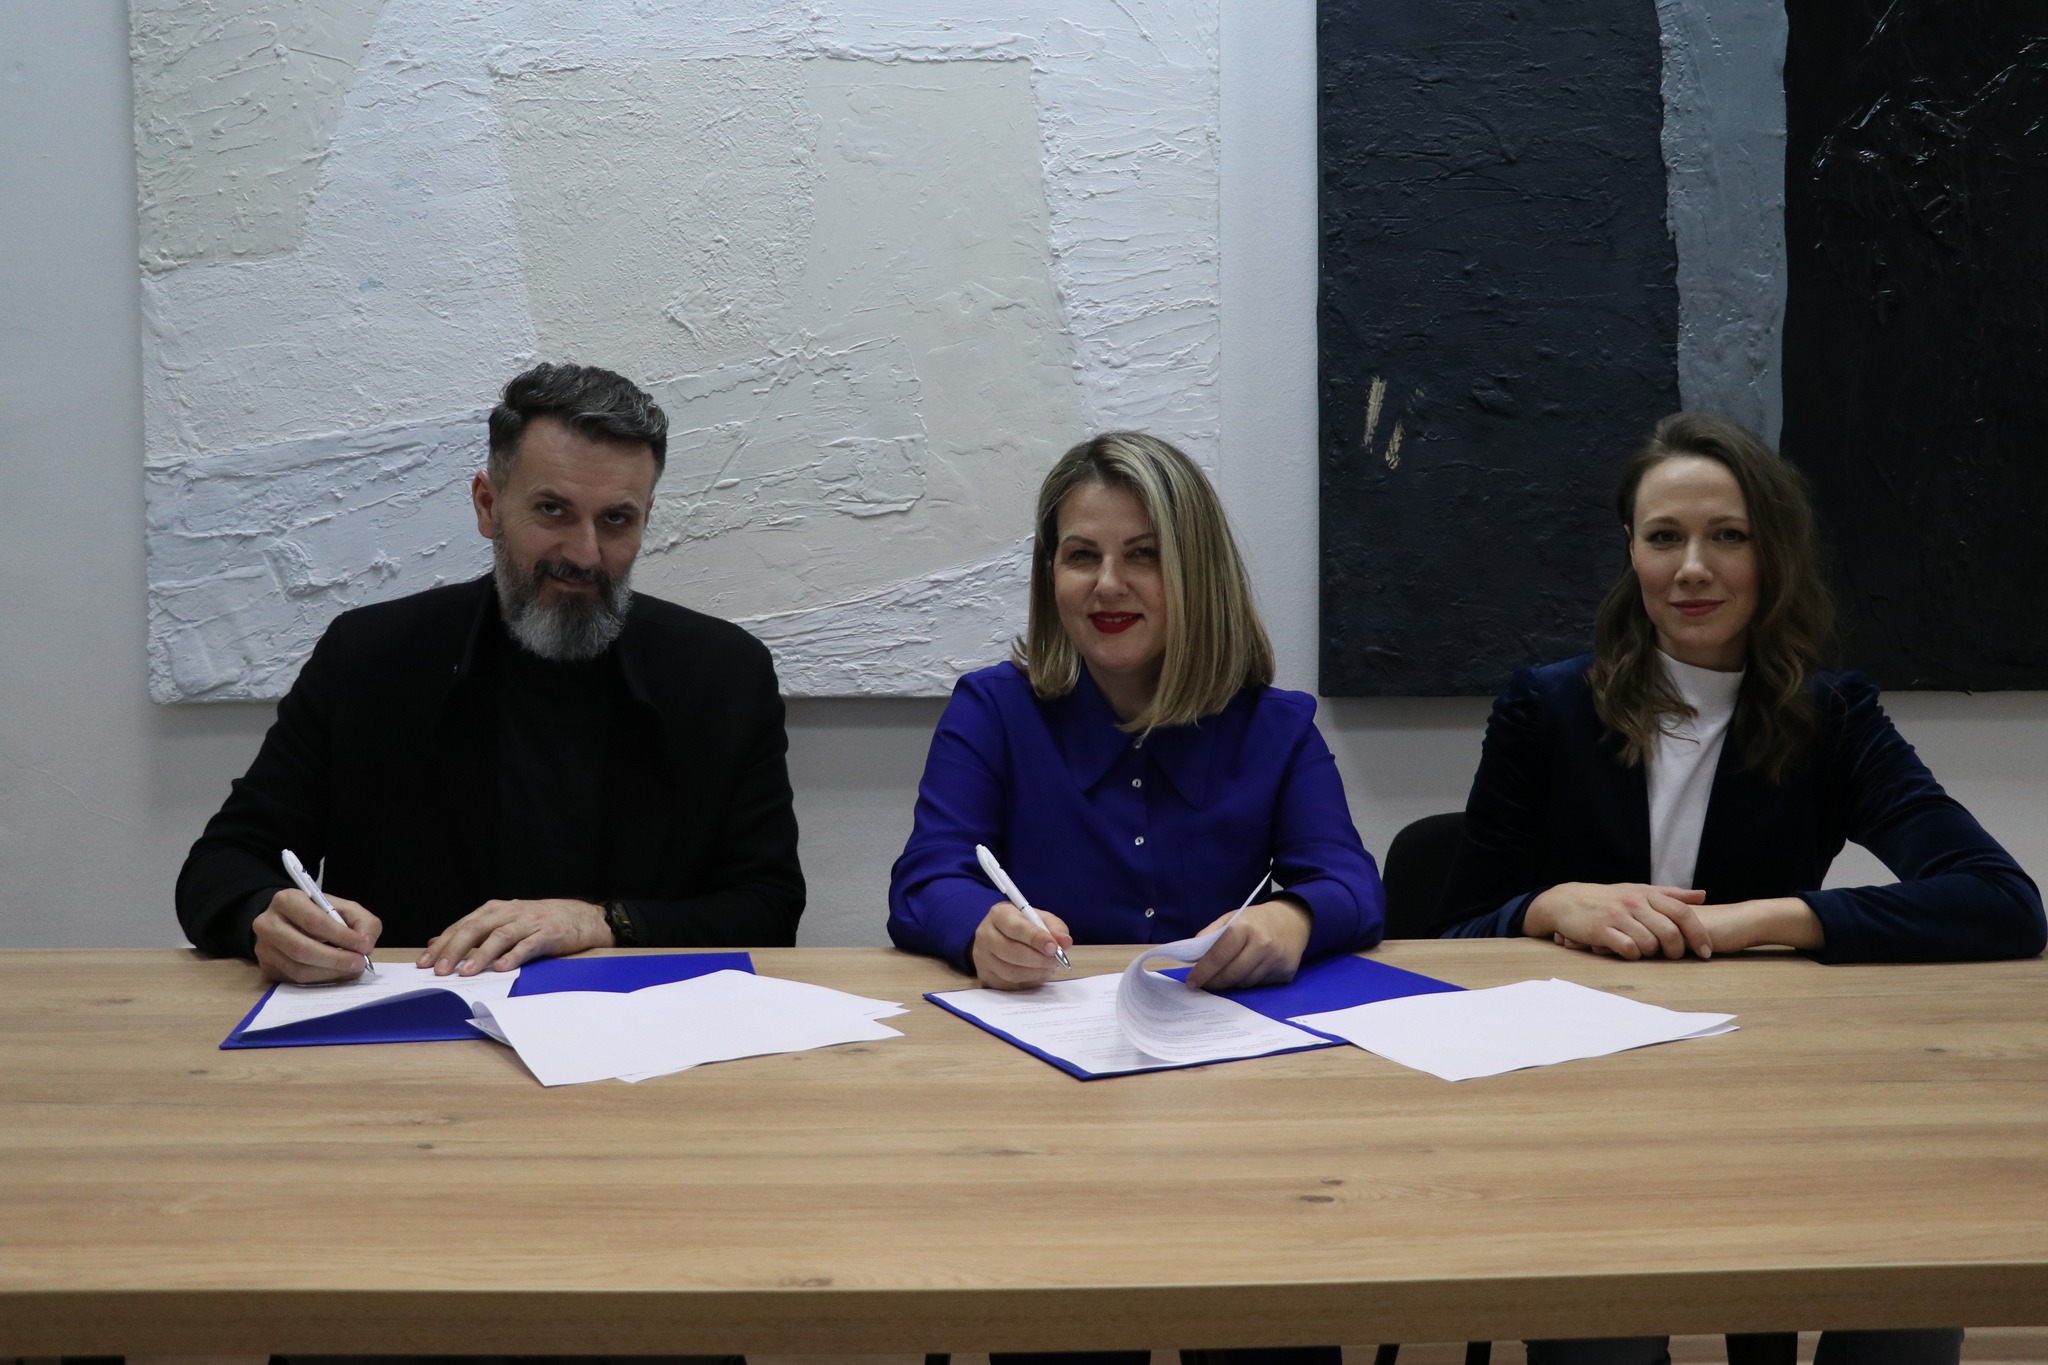 Potpisan sporazum sa Akademijom likovnih umjetnosti Sveučilišta u Mostaru